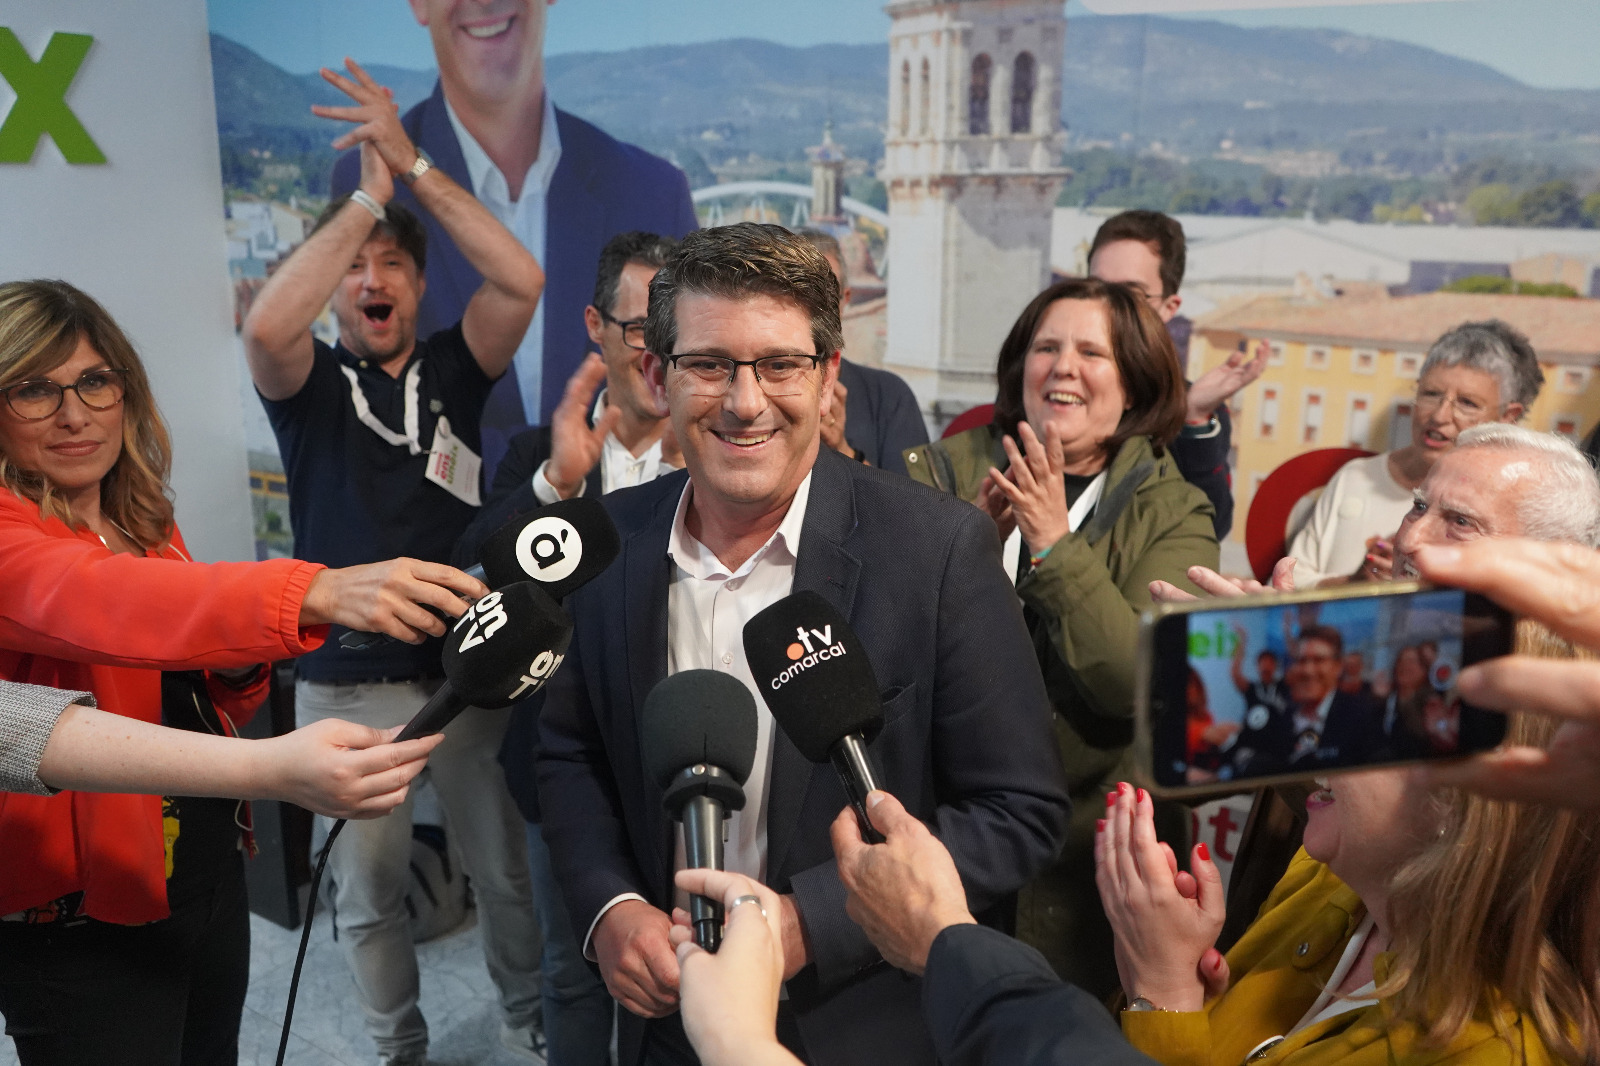 Jorge Rodríguez revalida la majoria absoluta; Ens Uneix manté el diputat comarcal El Periòdic d'Ontinyent - Noticies a Ontinyent